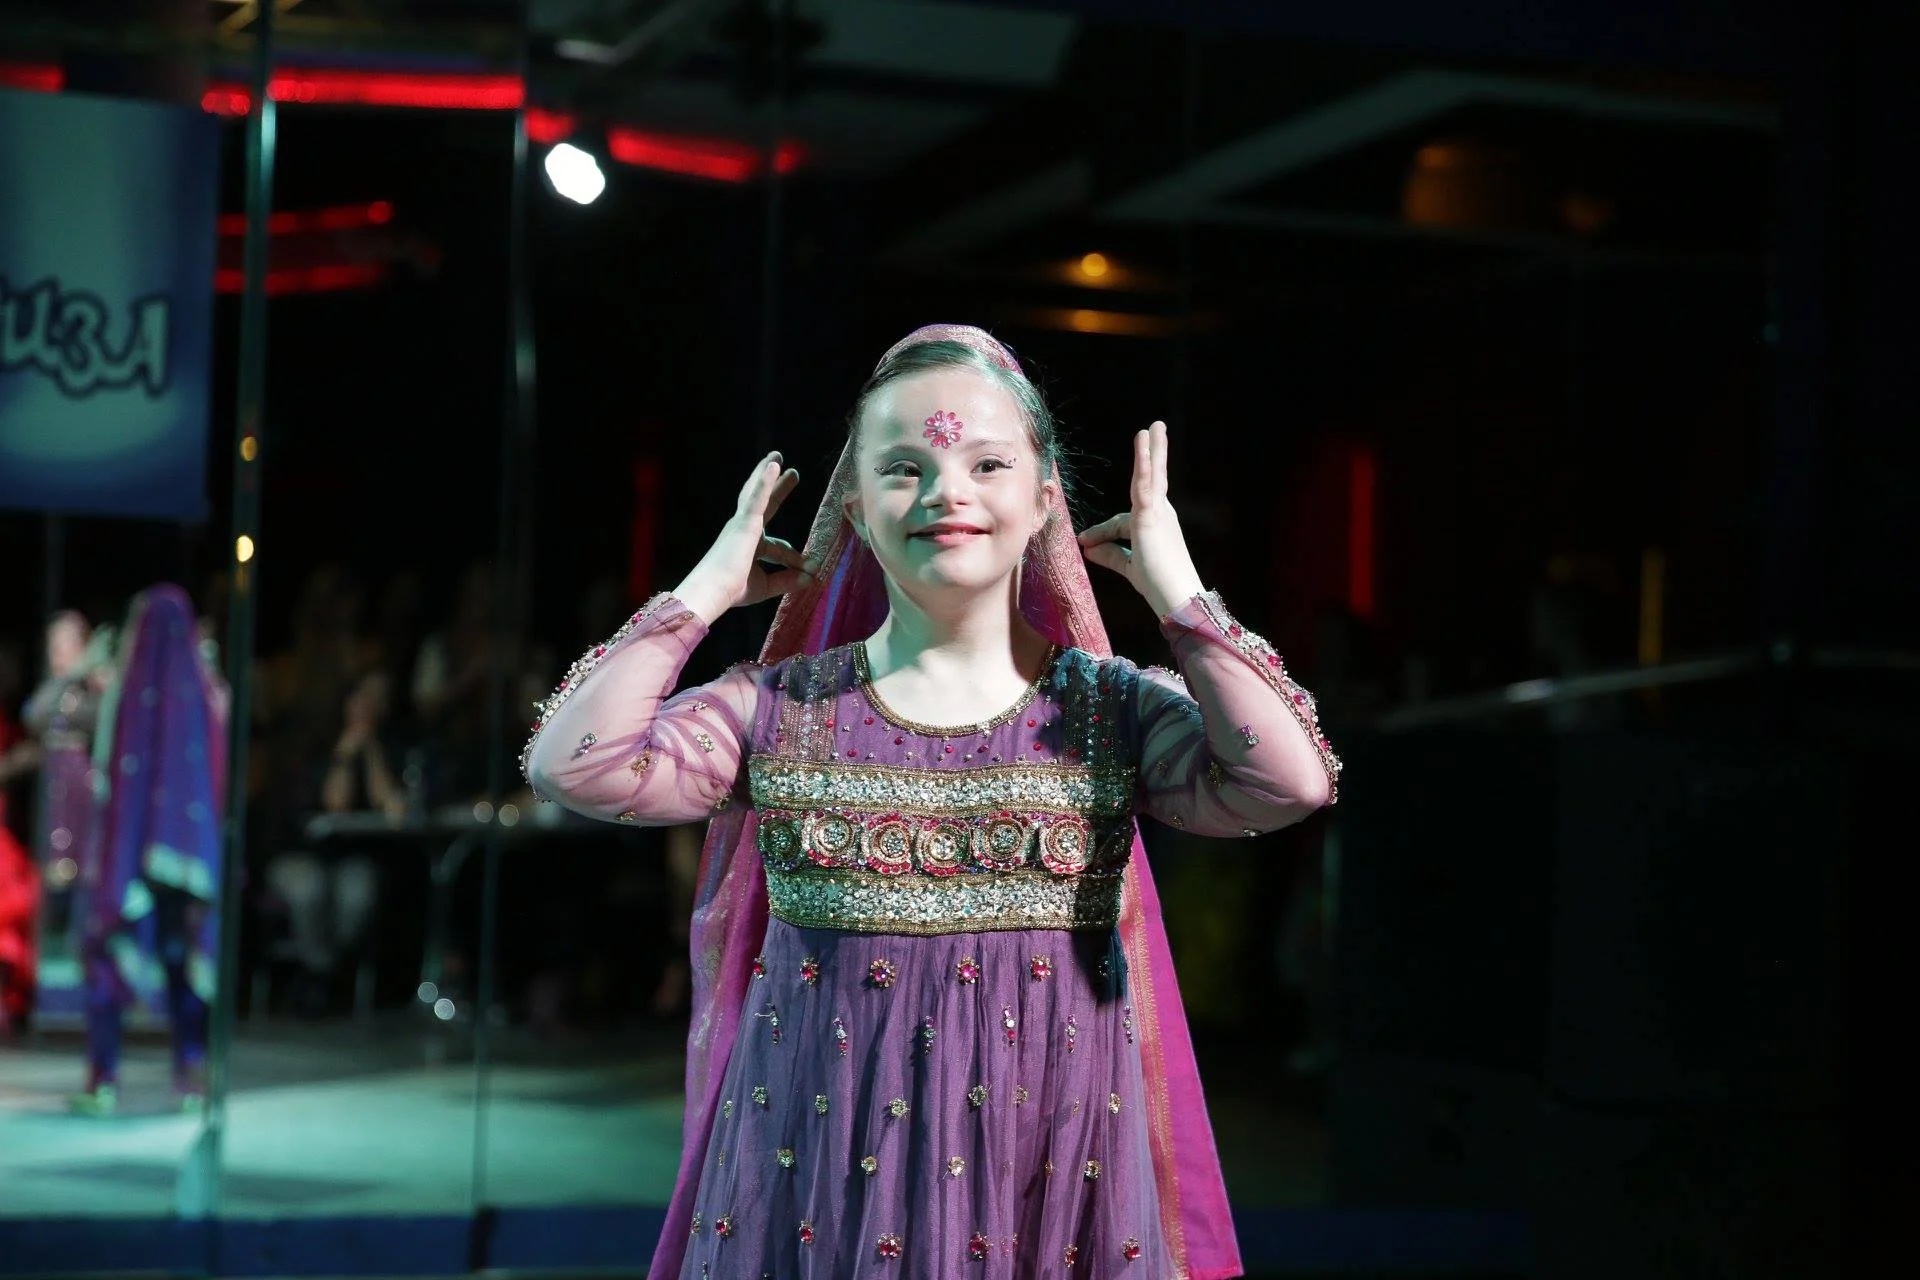 Українка з незвичайною зовнішністю перемогла у міжнародному дитячому конкурсі краси - фото 433611